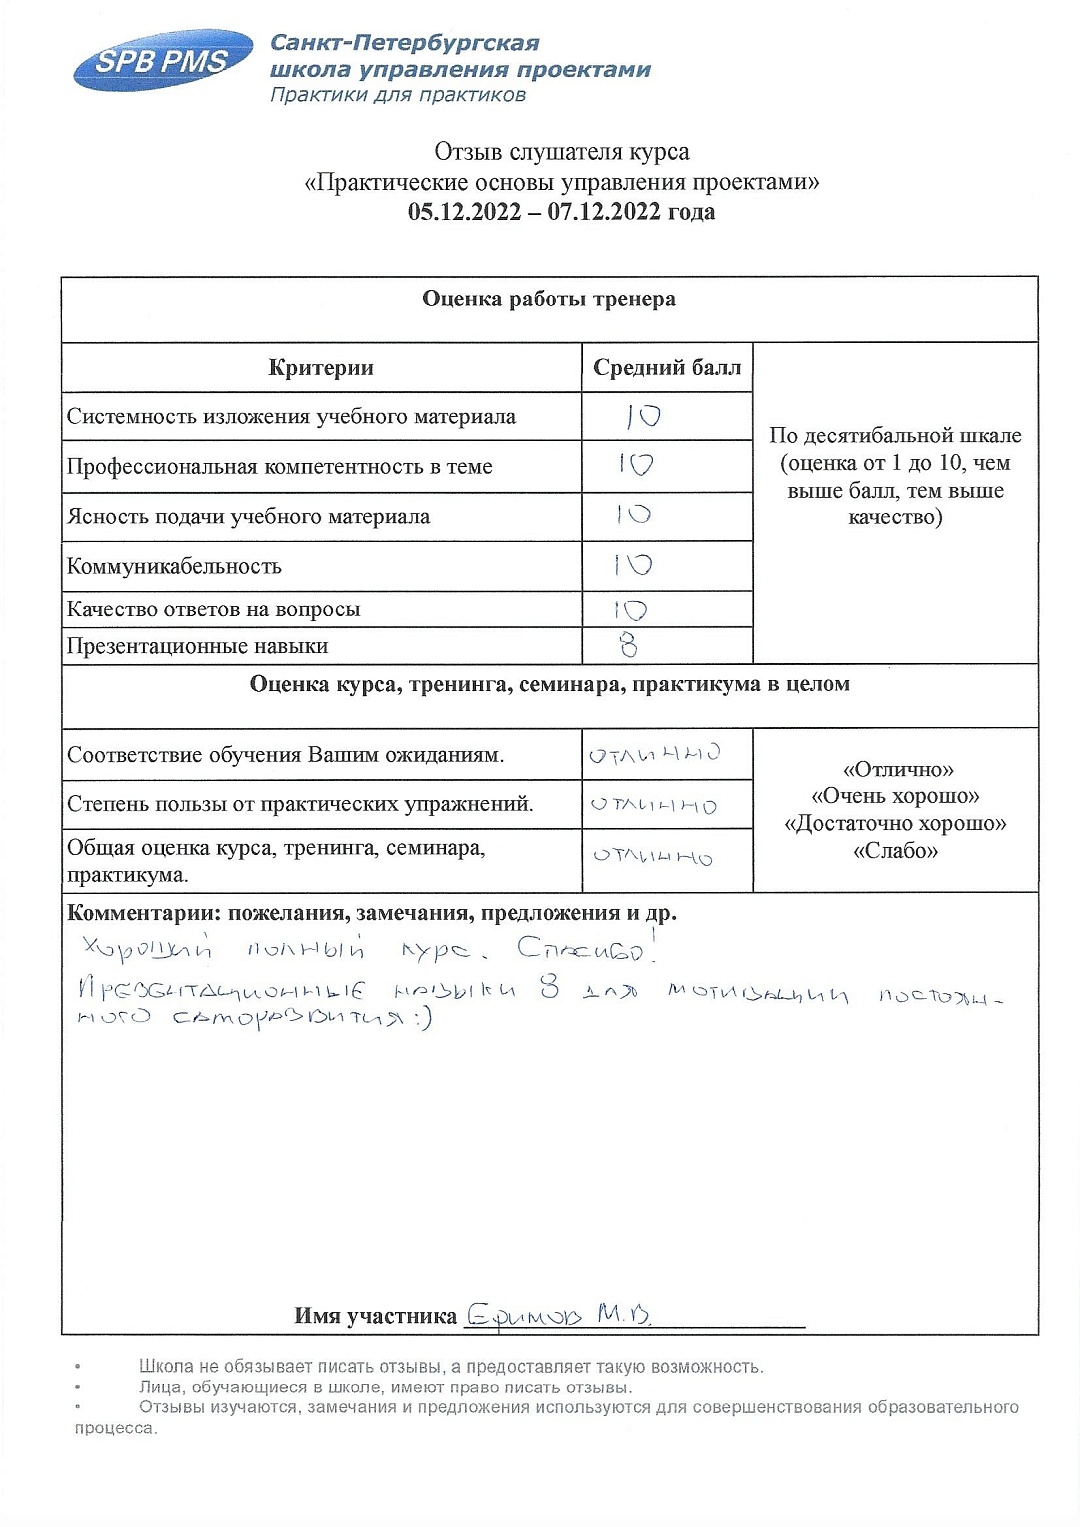 Практические основы управления проектами_07.12.2022